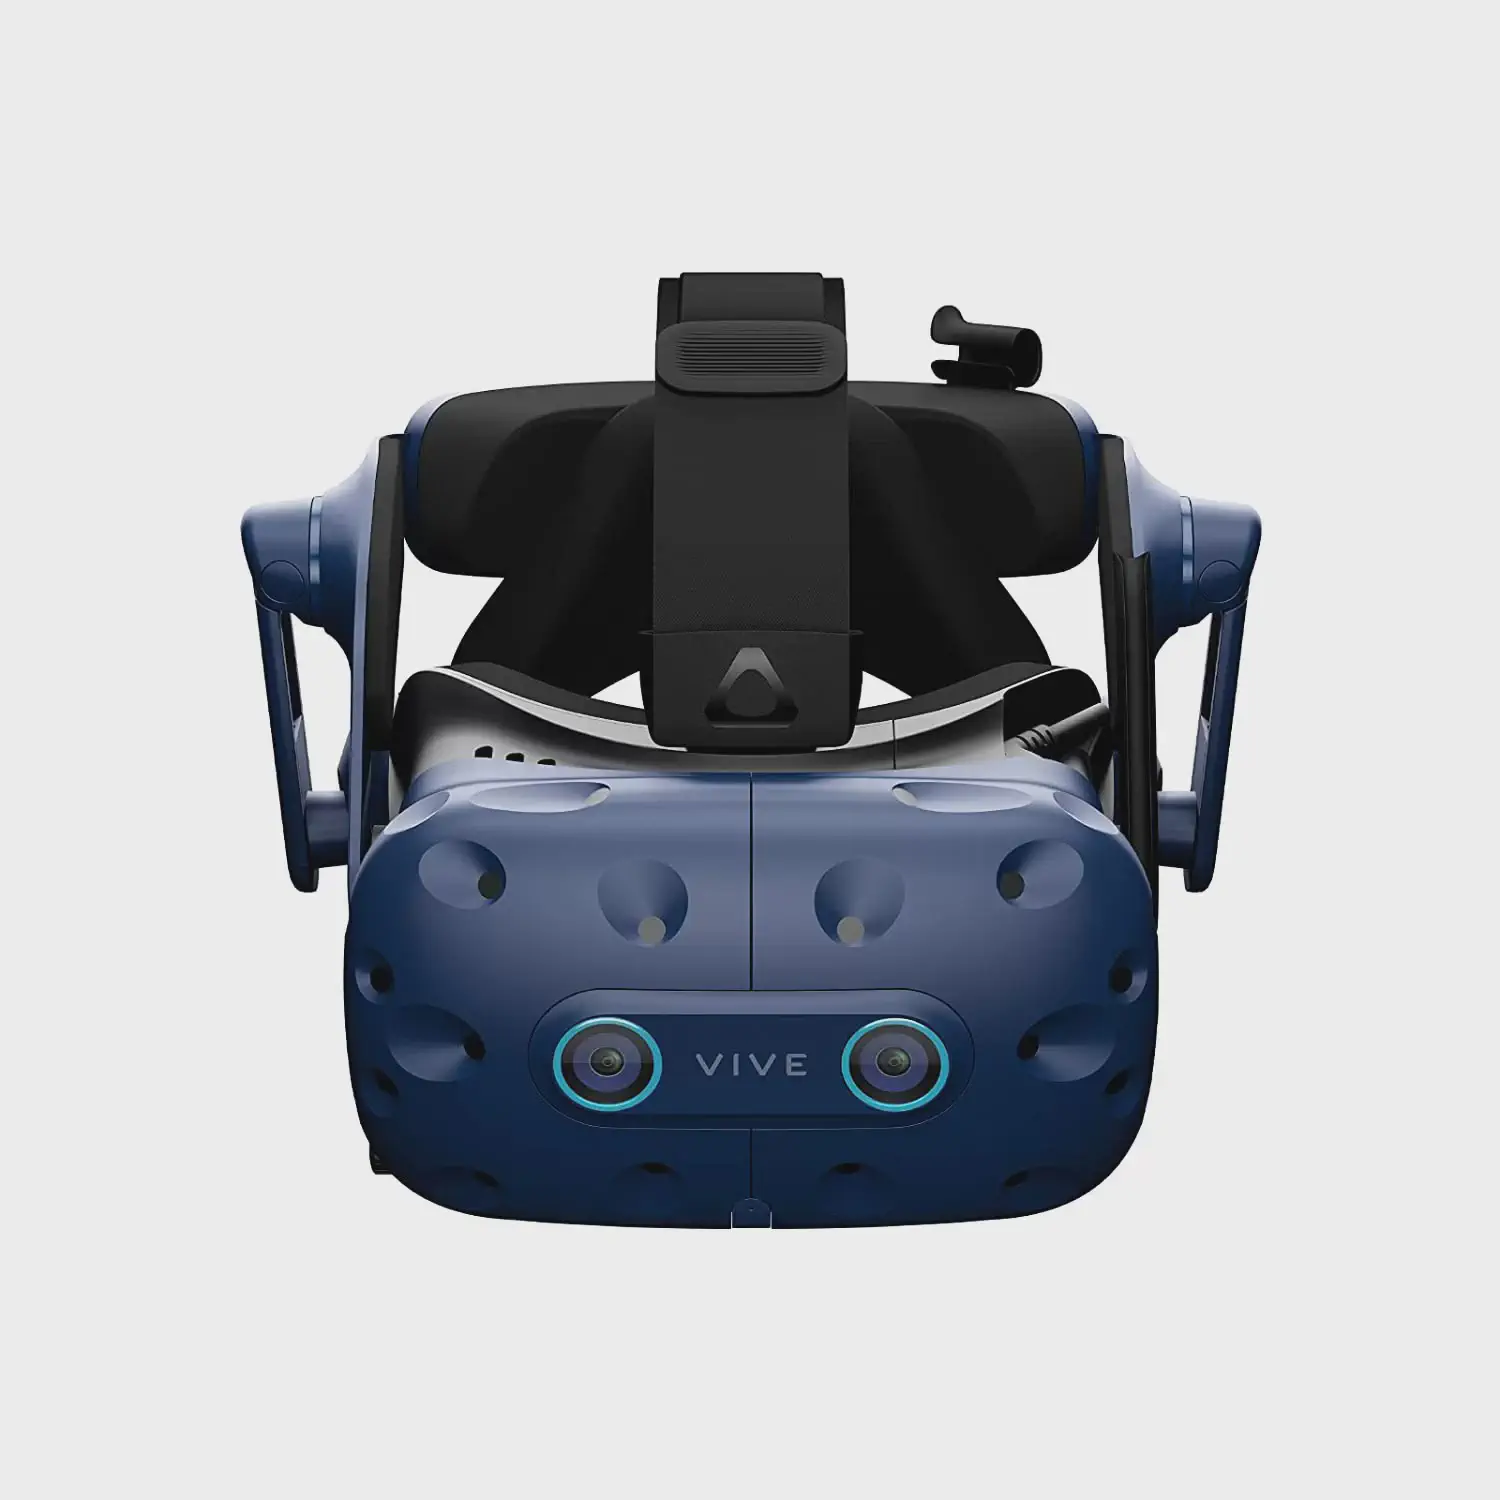 6 лучших гарнитур виртуальной реальности для iPhone XS Max